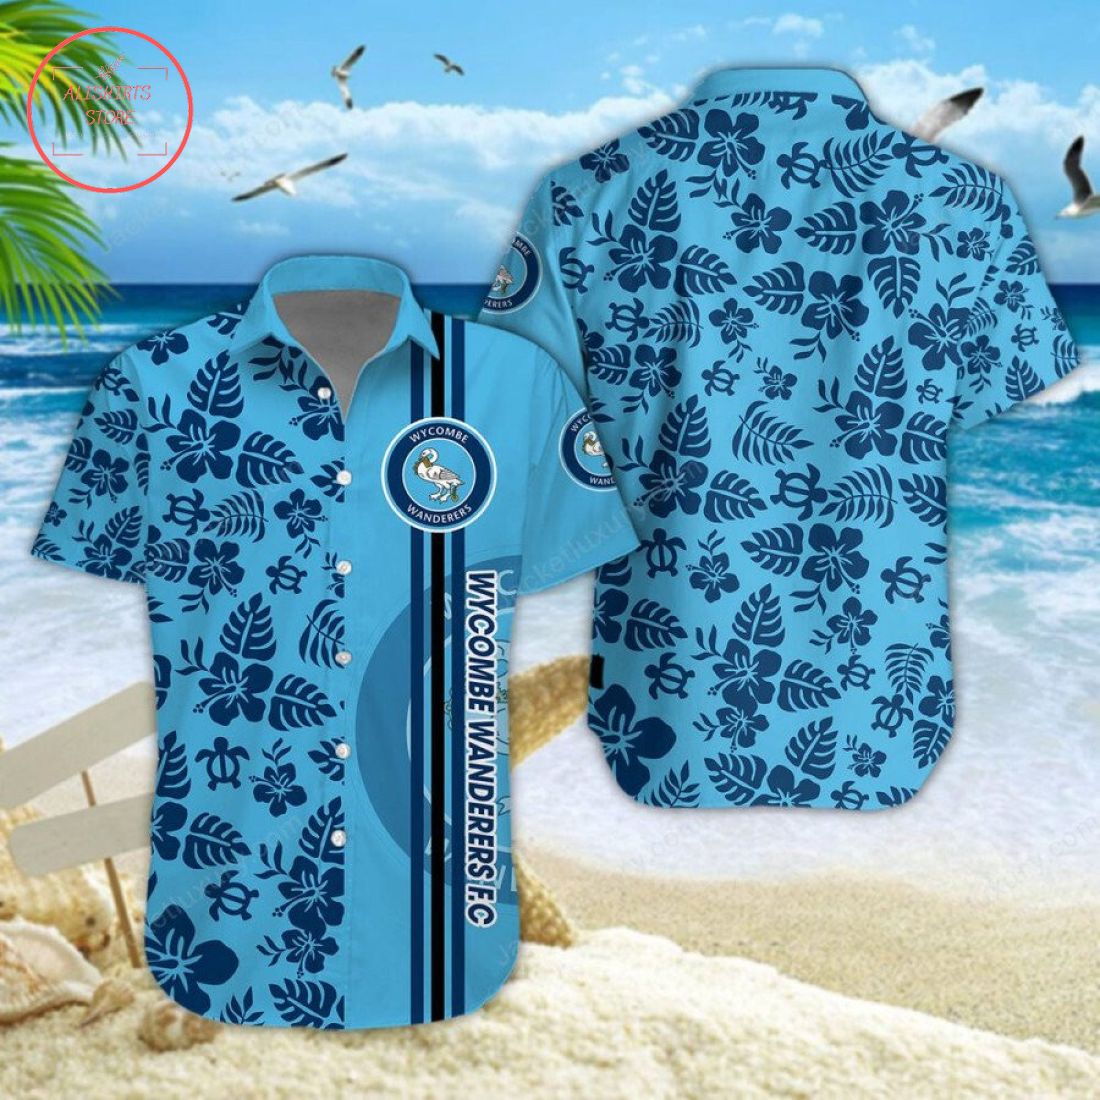 Wycombe Wanderers F.C Aloha Hawaiian Shirt and Beach Shorts